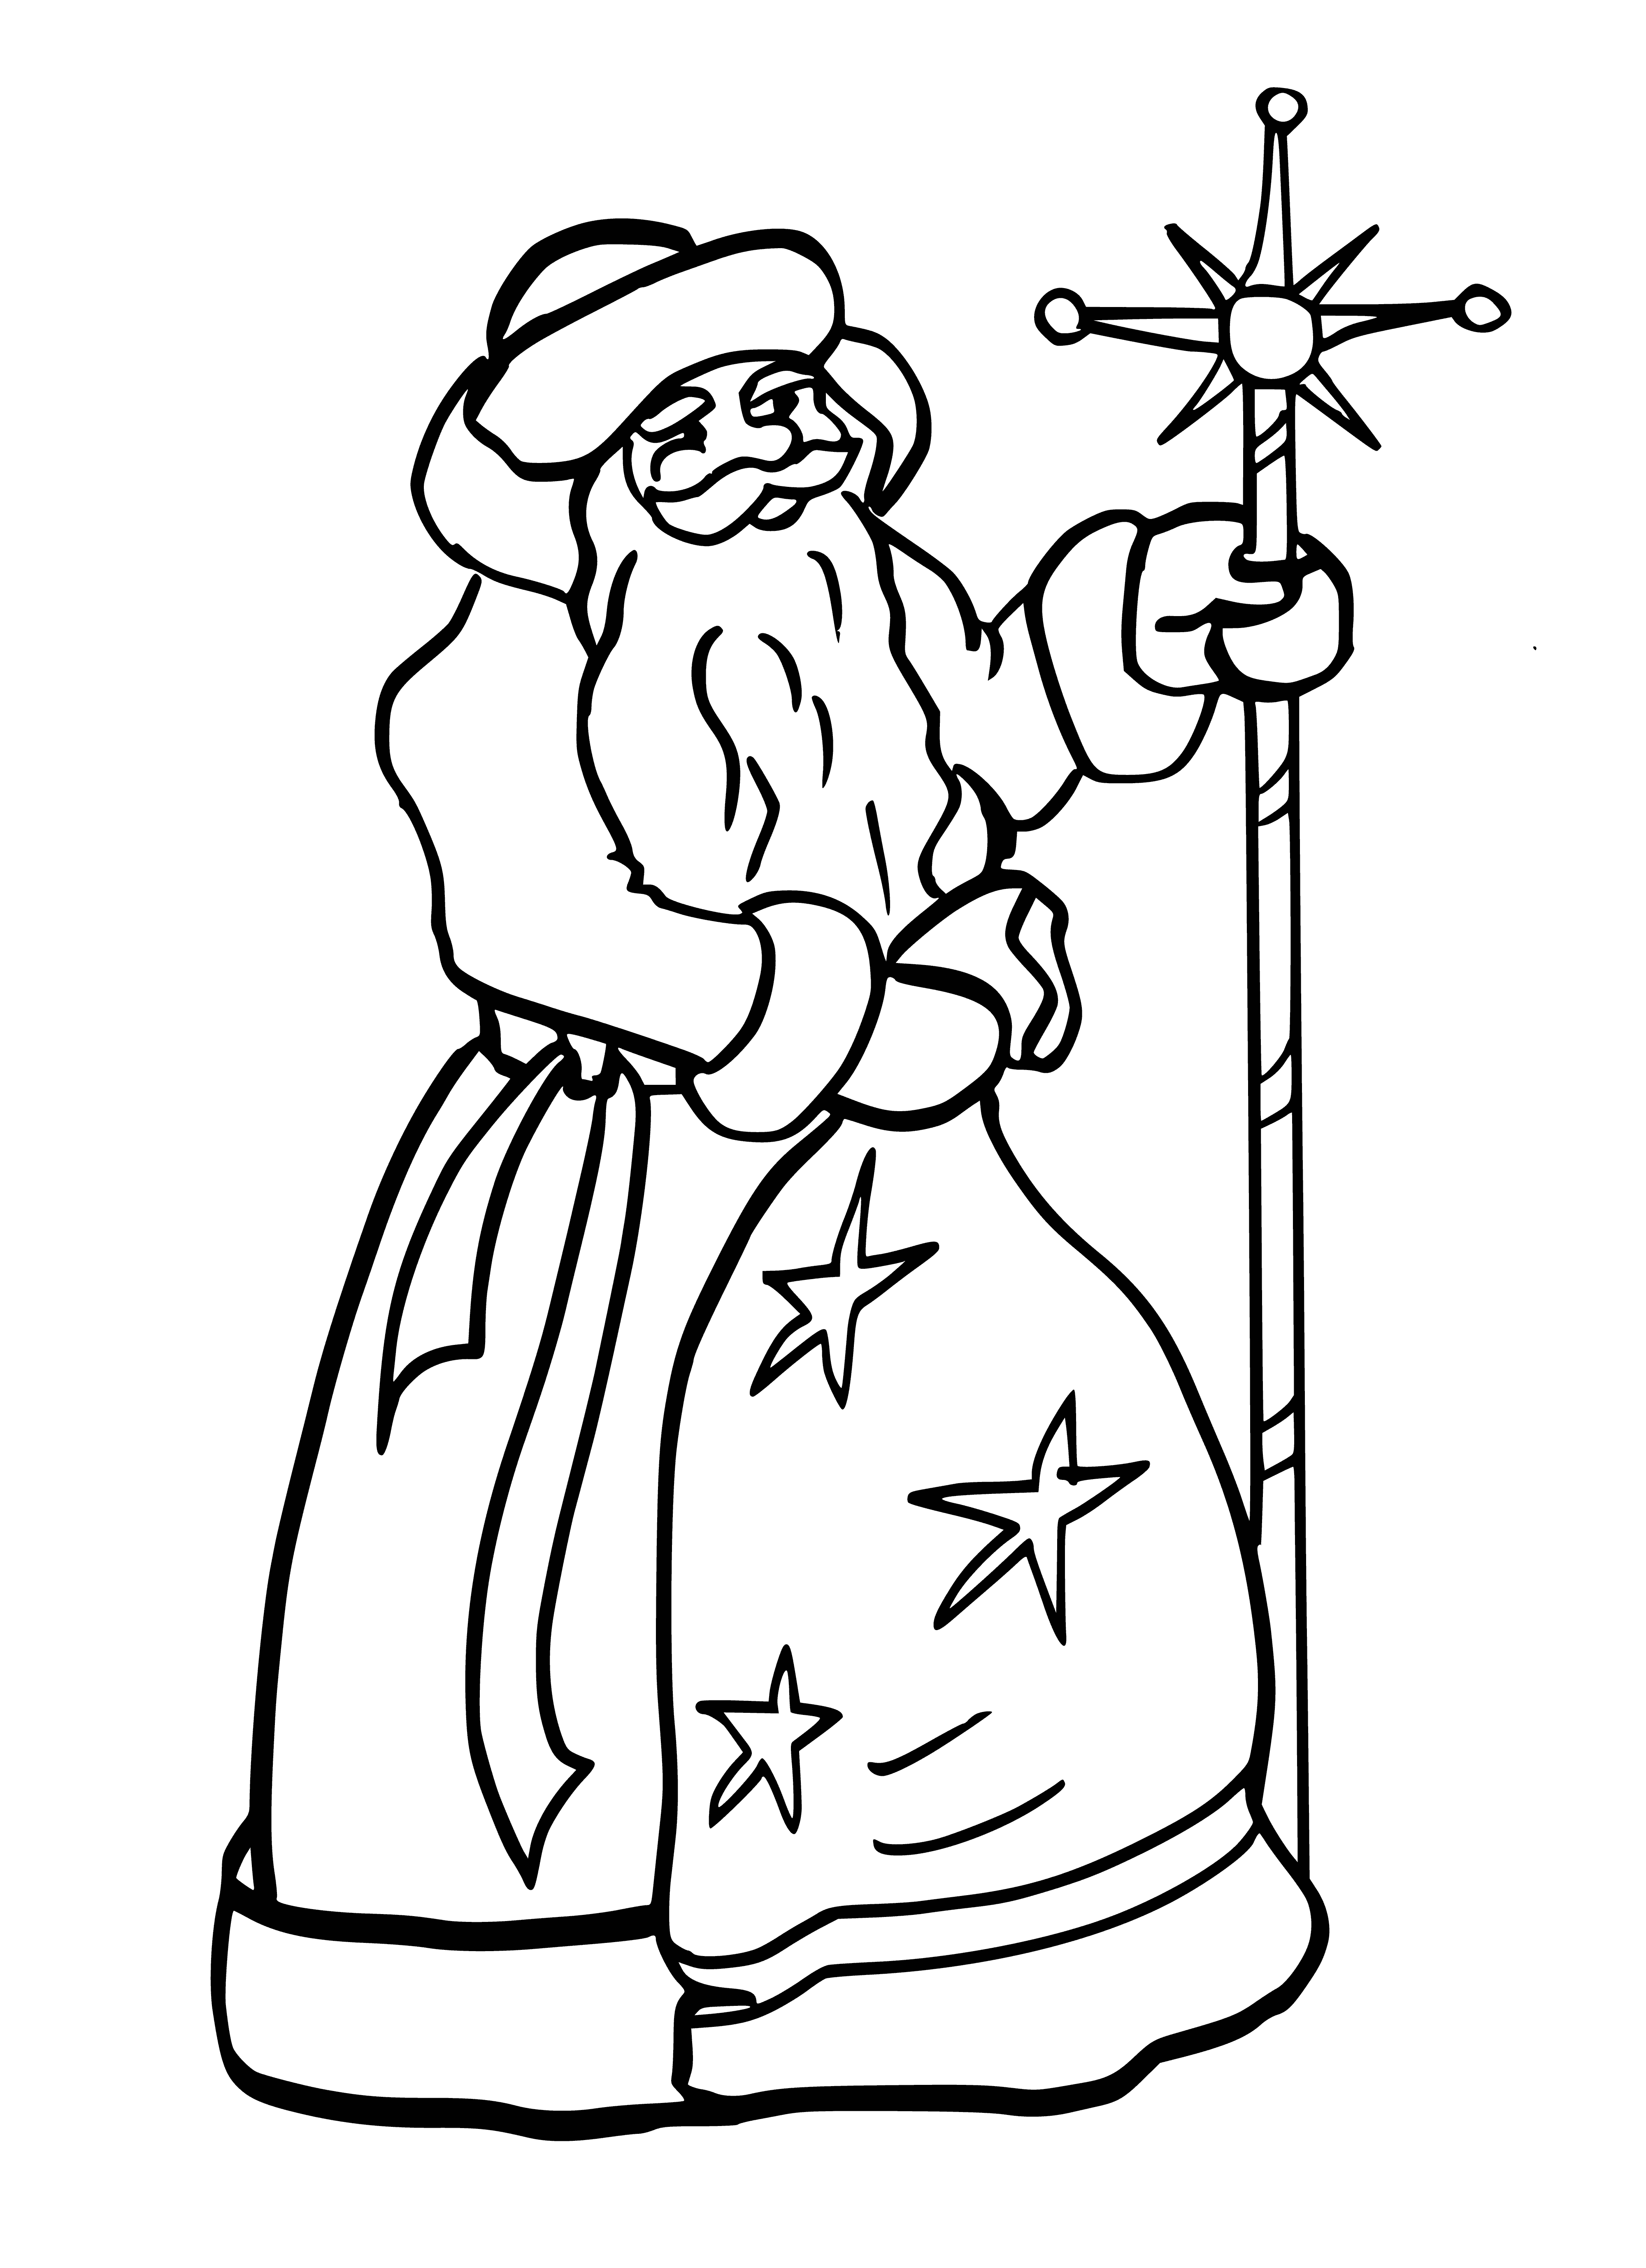 Święty Mikołaj z torbą kolorowanka